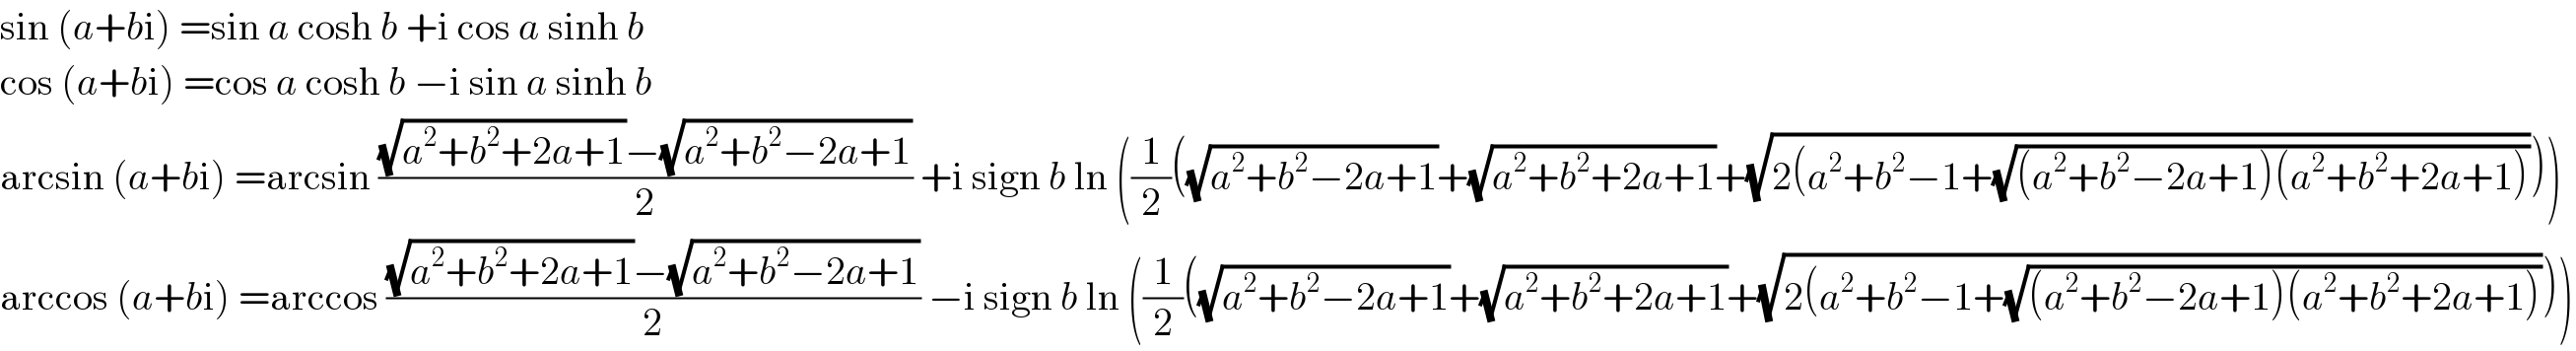 sin (a+bi) =sin a cosh b +i cos a sinh b  cos (a+bi) =cos a cosh b −i sin a sinh b  arcsin (a+bi) =arcsin (((√(a^2 +b^2 +2a+1))−(√(a^2 +b^2 −2a+1)))/2) +i sign b ln ((1/2)((√(a^2 +b^2 −2a+1))+(√(a^2 +b^2 +2a+1))+(√(2(a^2 +b^2 −1+(√((a^2 +b^2 −2a+1)(a^2 +b^2 +2a+1)))))))  arccos (a+bi) =arccos (((√(a^2 +b^2 +2a+1))−(√(a^2 +b^2 −2a+1)))/2) −i sign b ln ((1/2)((√(a^2 +b^2 −2a+1))+(√(a^2 +b^2 +2a+1))+(√(2(a^2 +b^2 −1+(√((a^2 +b^2 −2a+1)(a^2 +b^2 +2a+1)))))))  